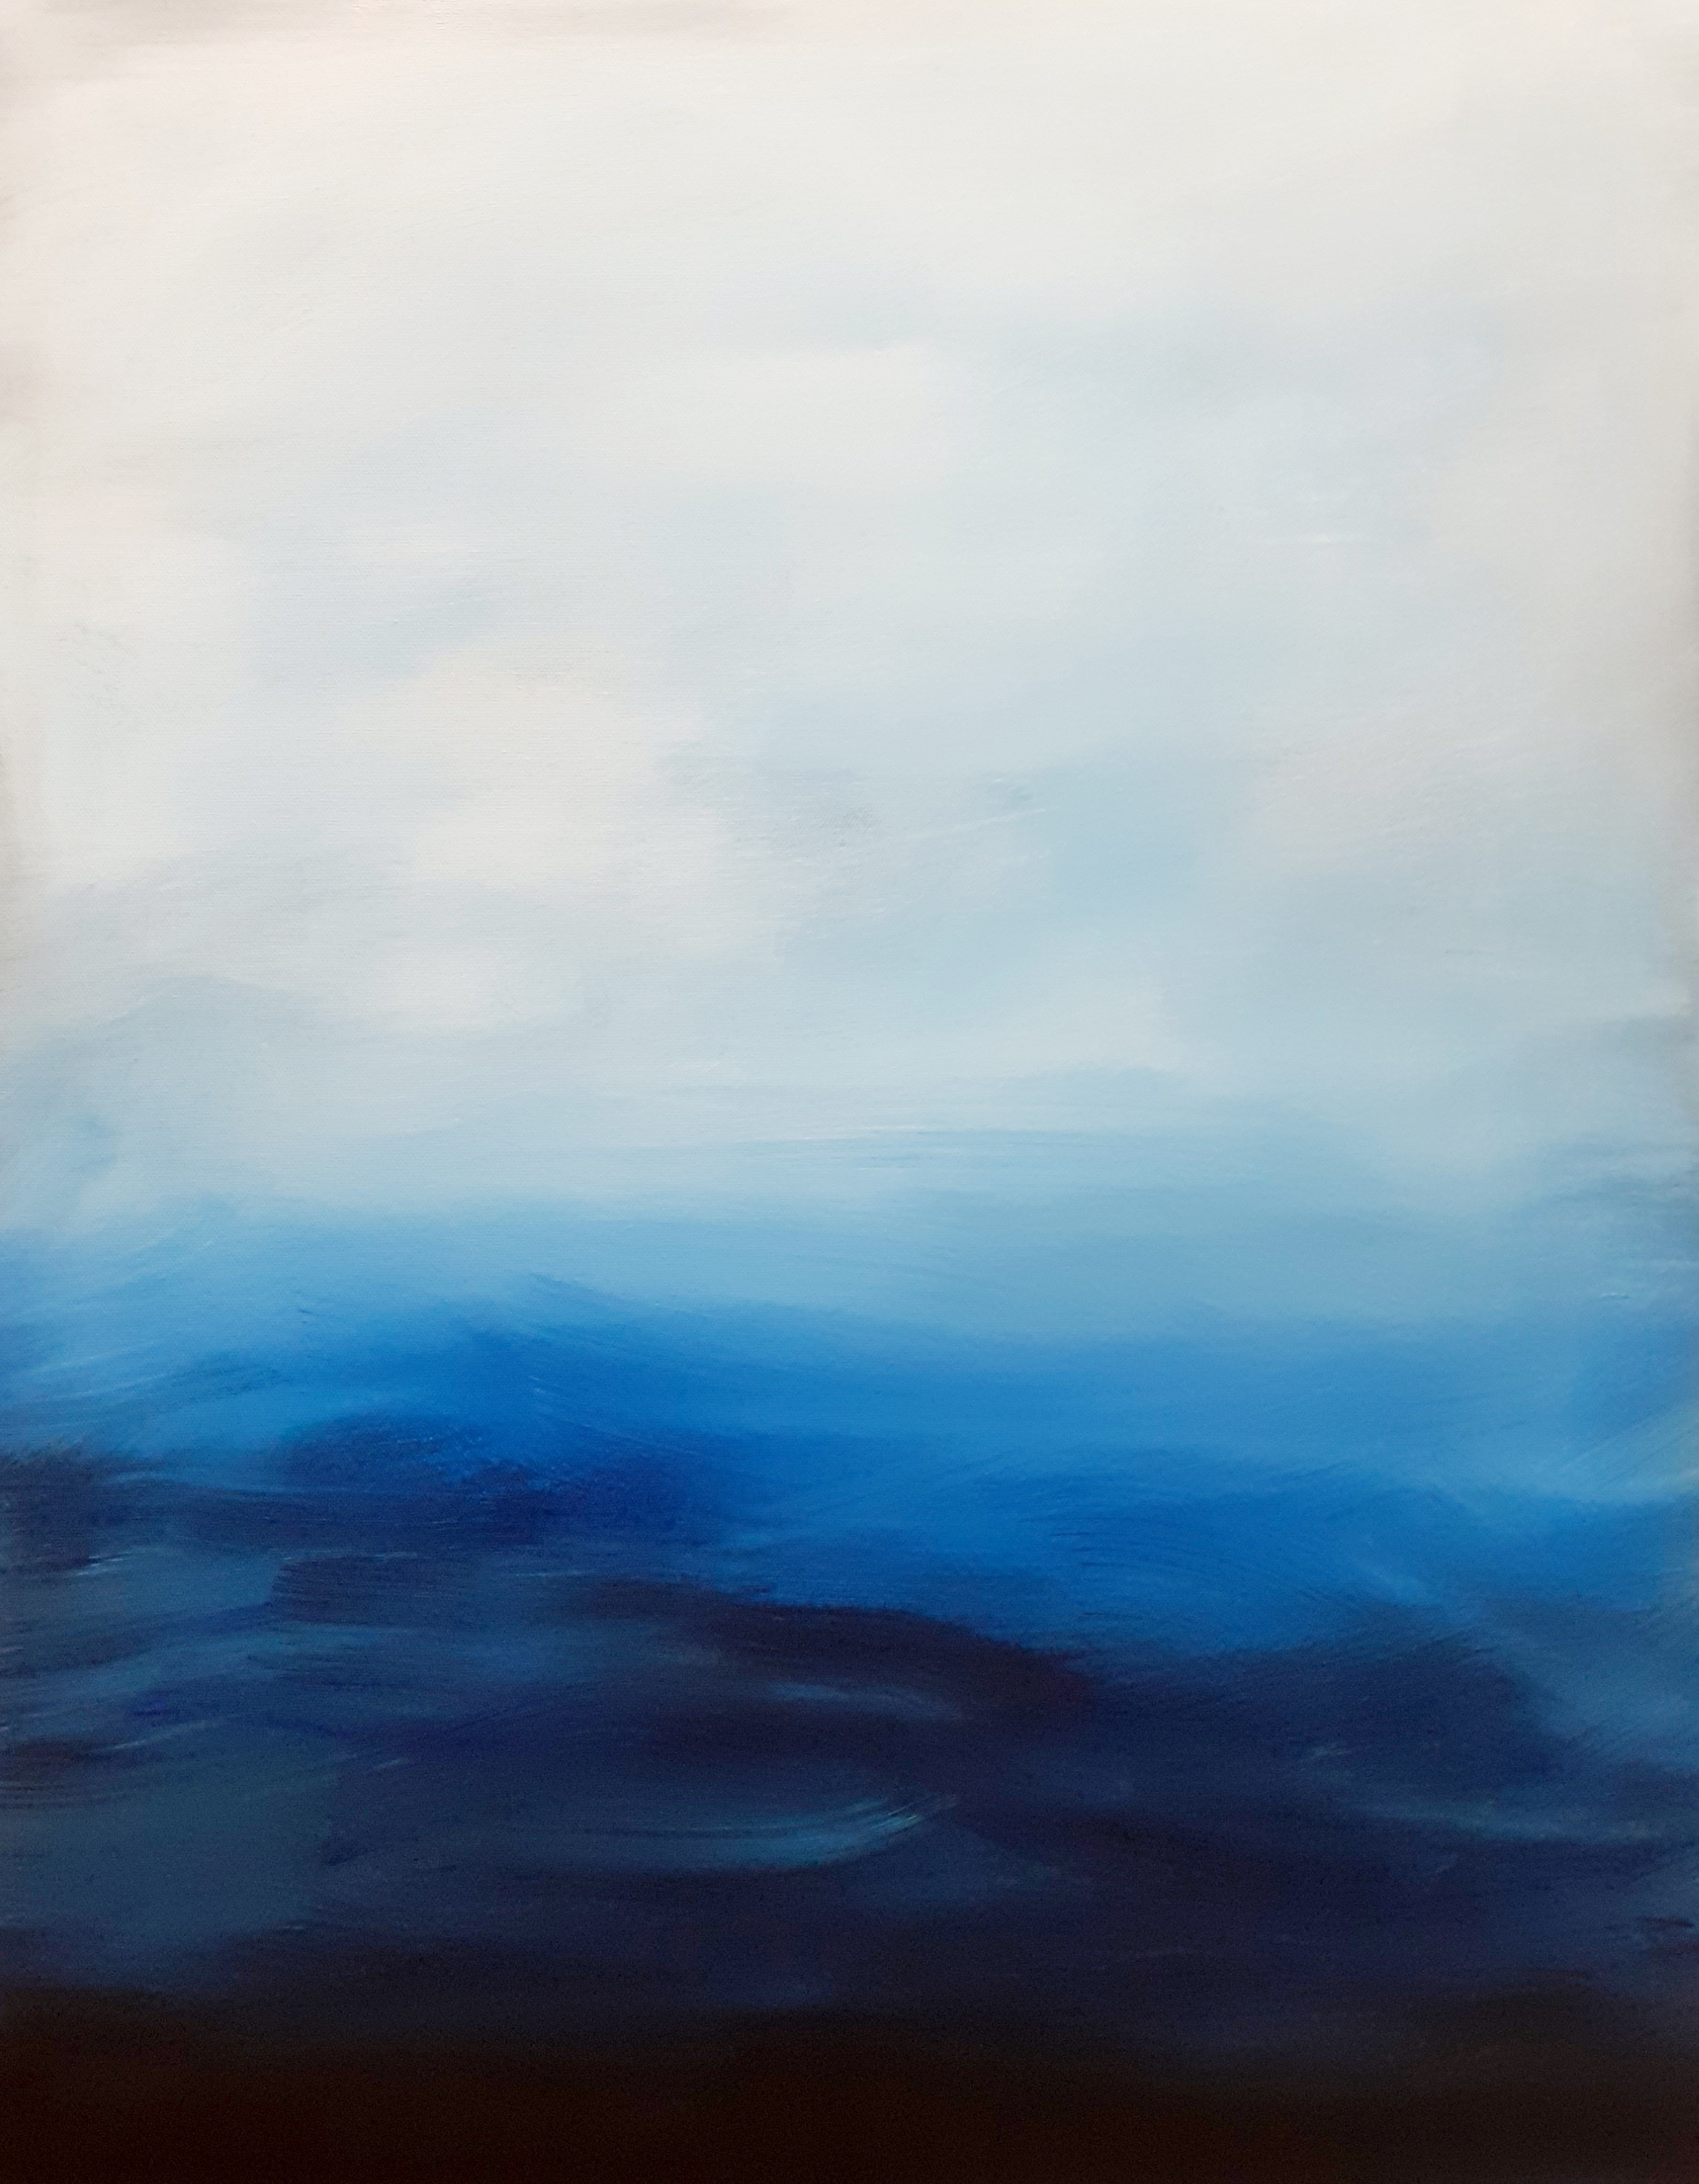 Deep Blue Sea by Charles Ellis